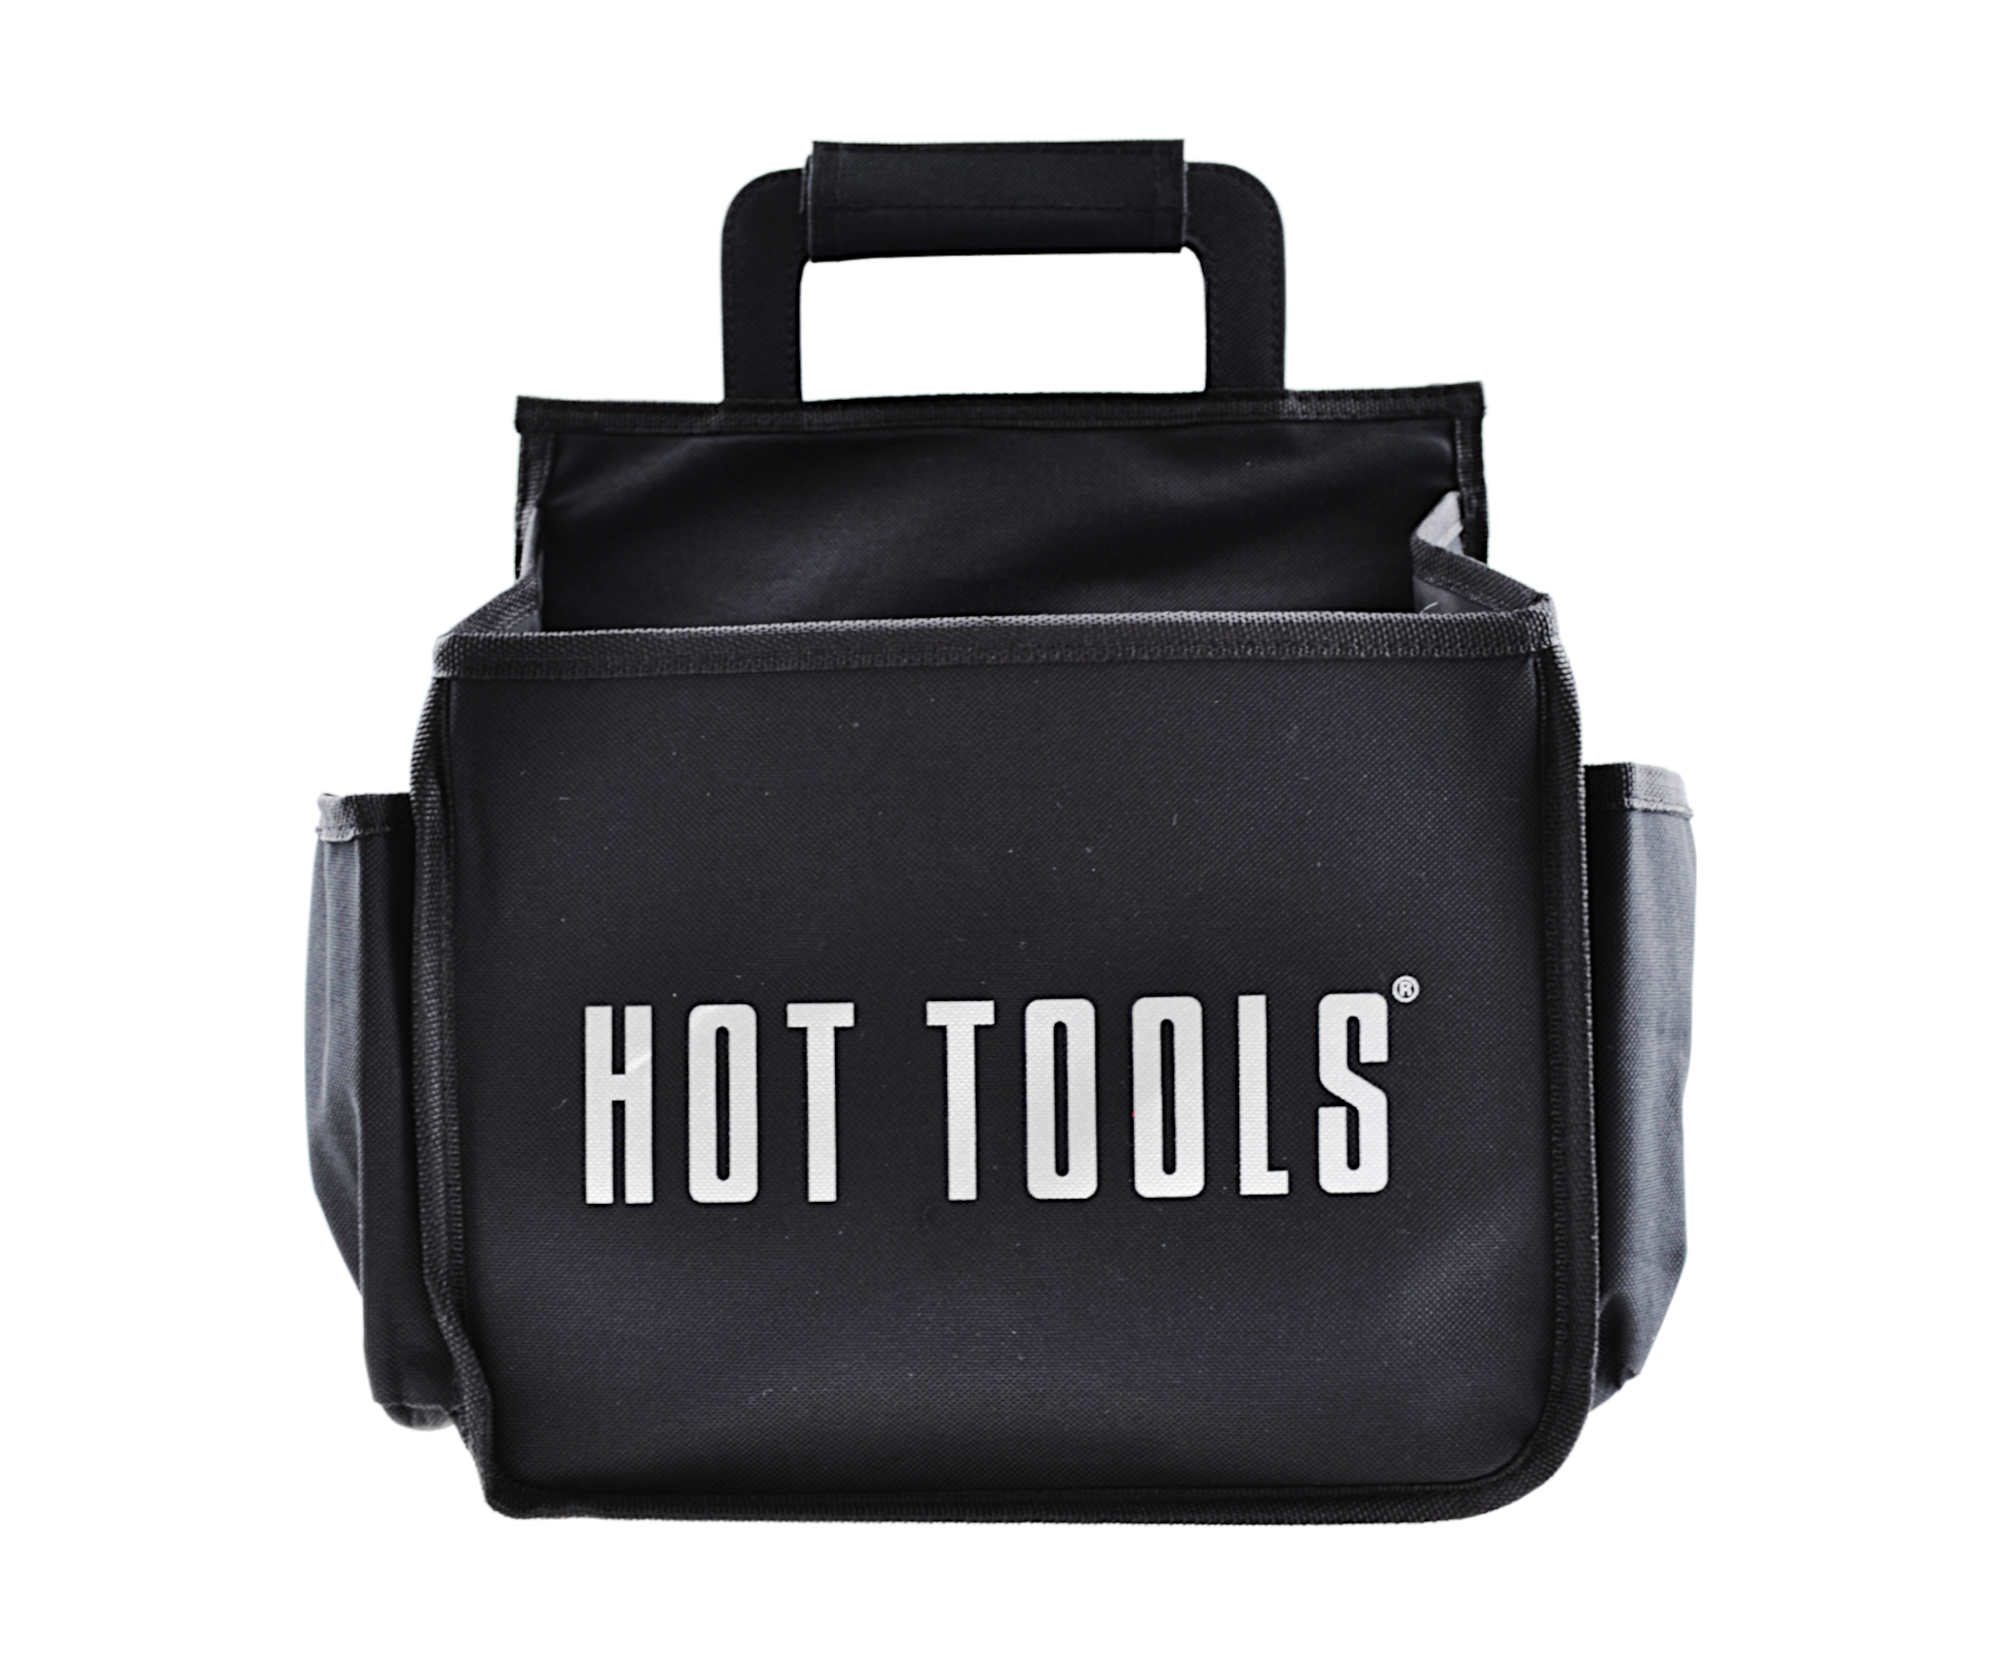 Přenosná taška na kadeřnické nástroje a příslušenství Hot Tools Appliance Caddy - černá (HTCADDYUKE) + DÁREK ZDARMA